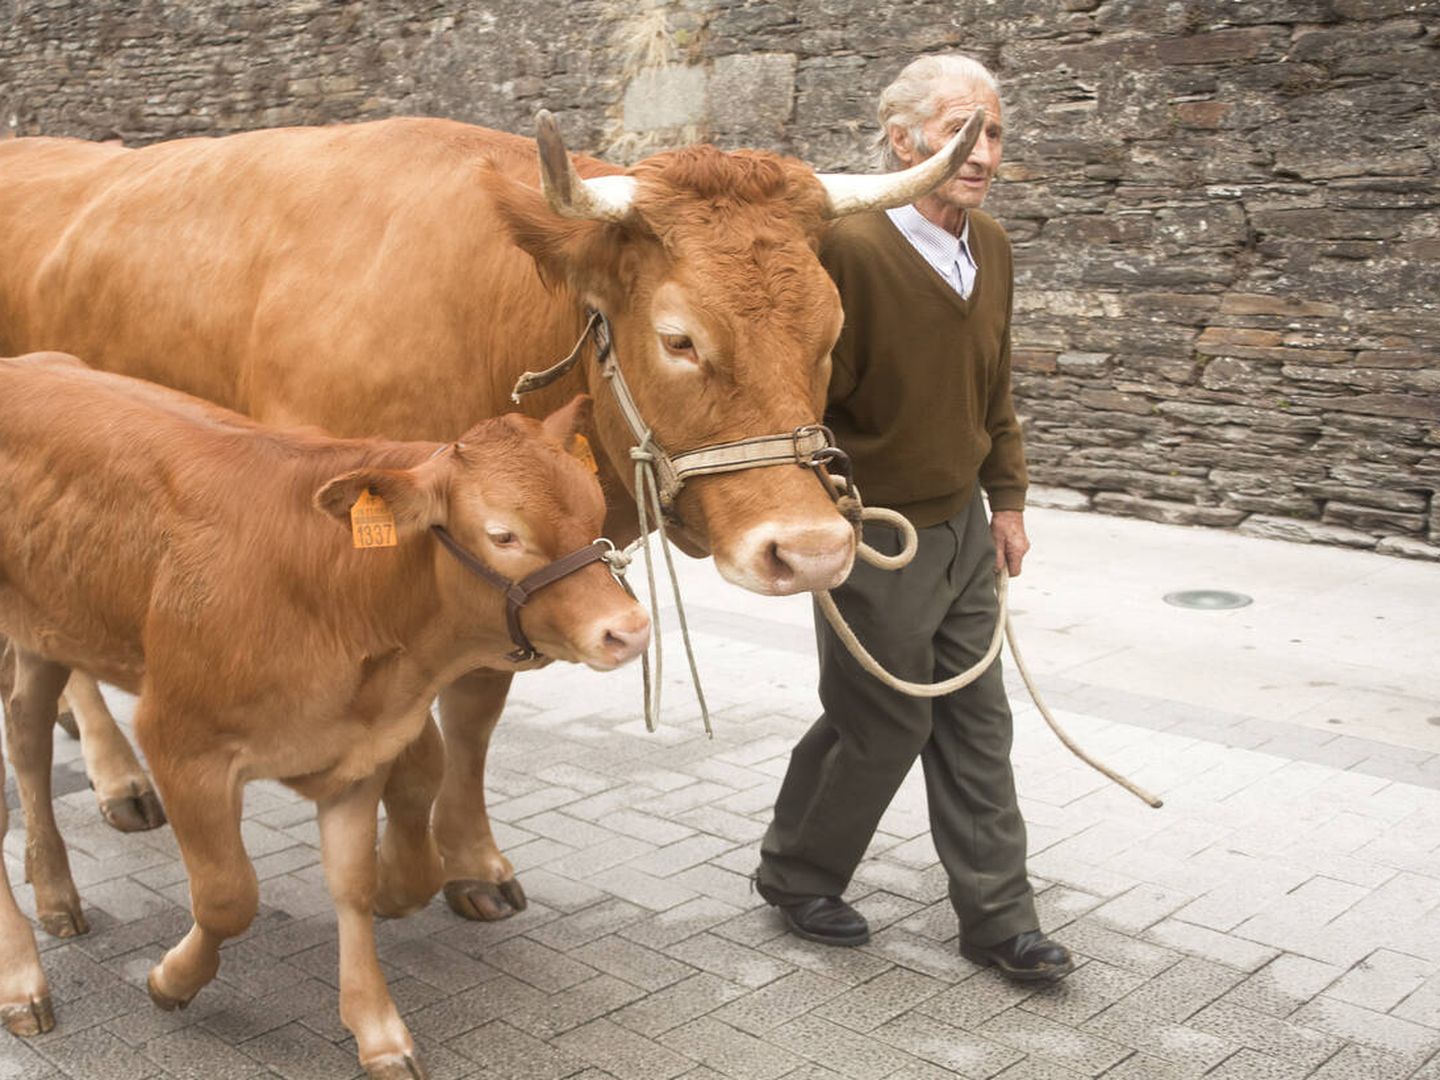 Ganadero de Lugo con vacas rubias.  (iStock)